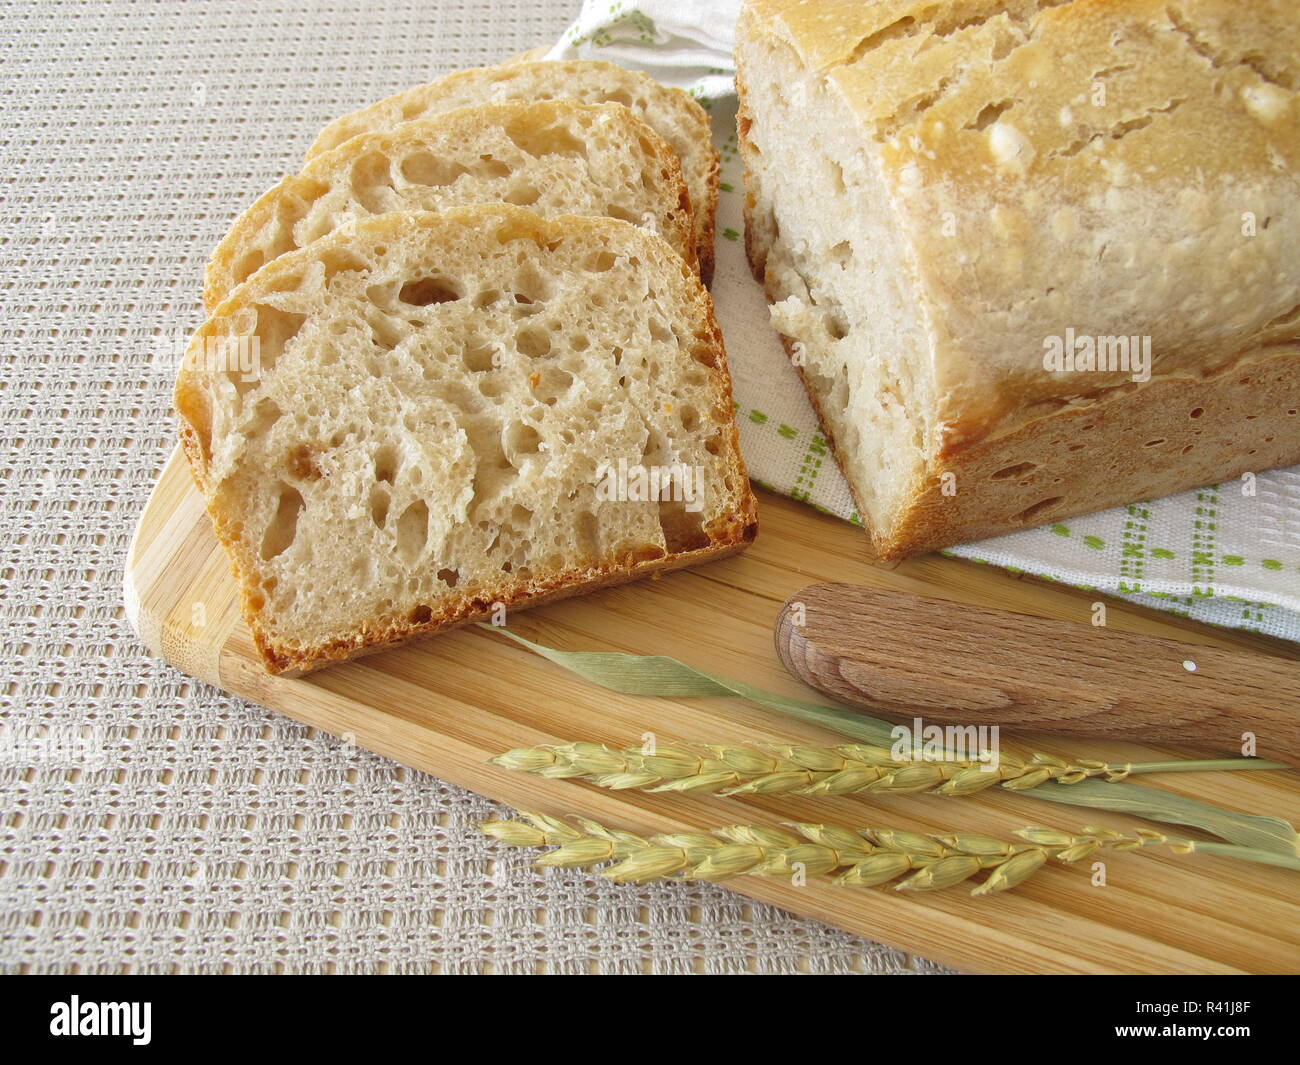 Zone de découpe du pain blanc fait de farine orthographié Banque D'Images